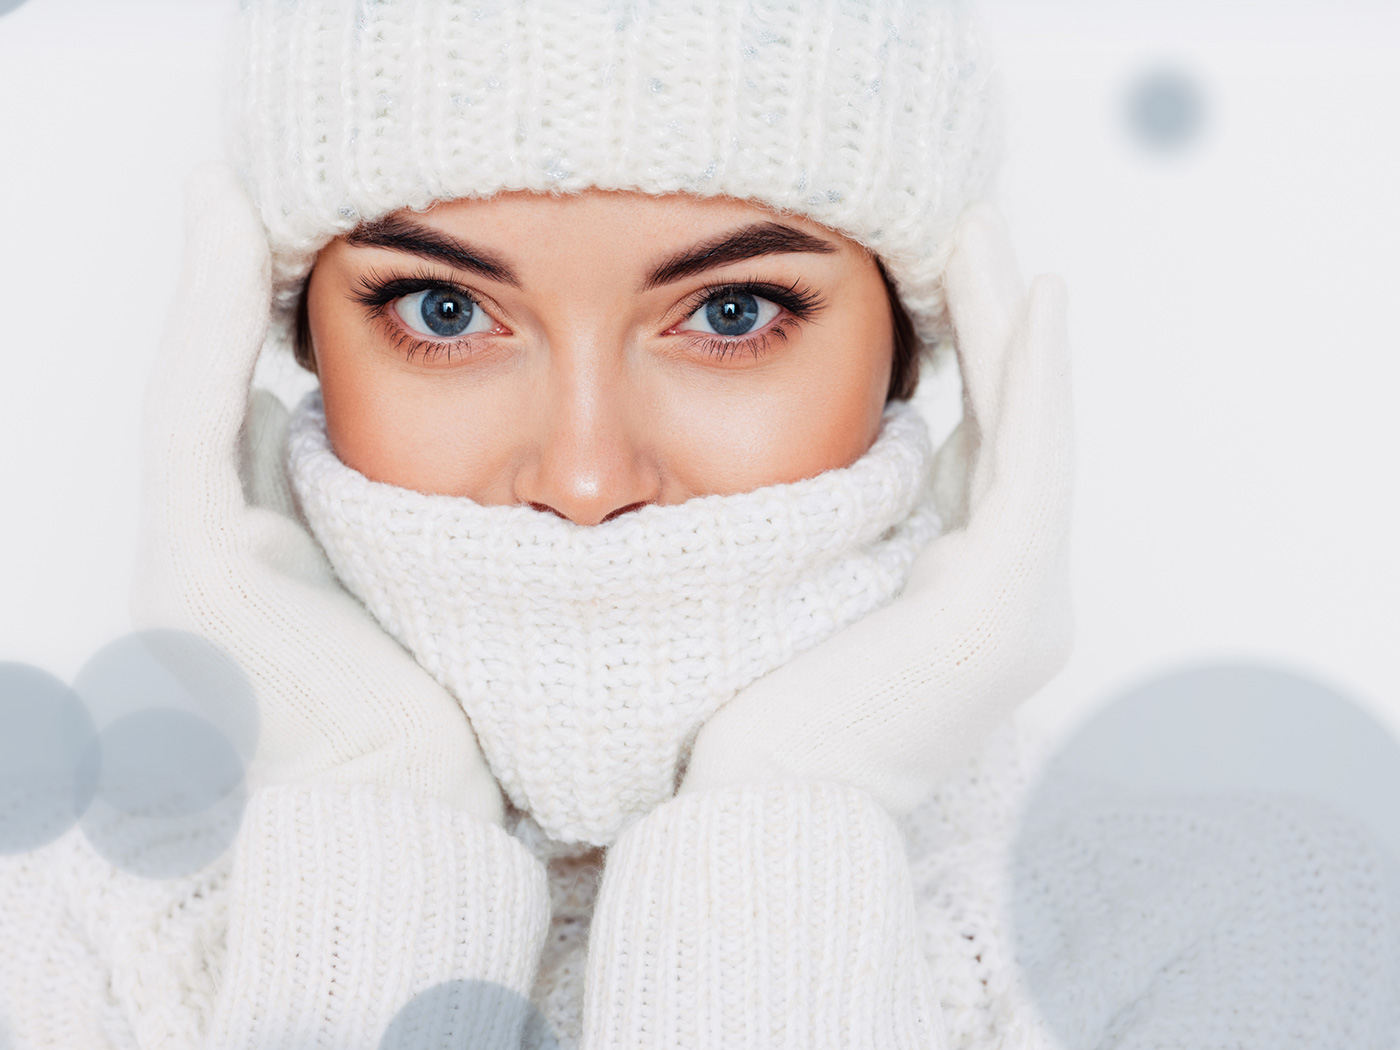 Πώς θα προστατεύσεις το δέρμα σου από το κρύο: Τα βήματα που ακολουθείς τώρα που η θερμοκρασία είναι χαμηλή